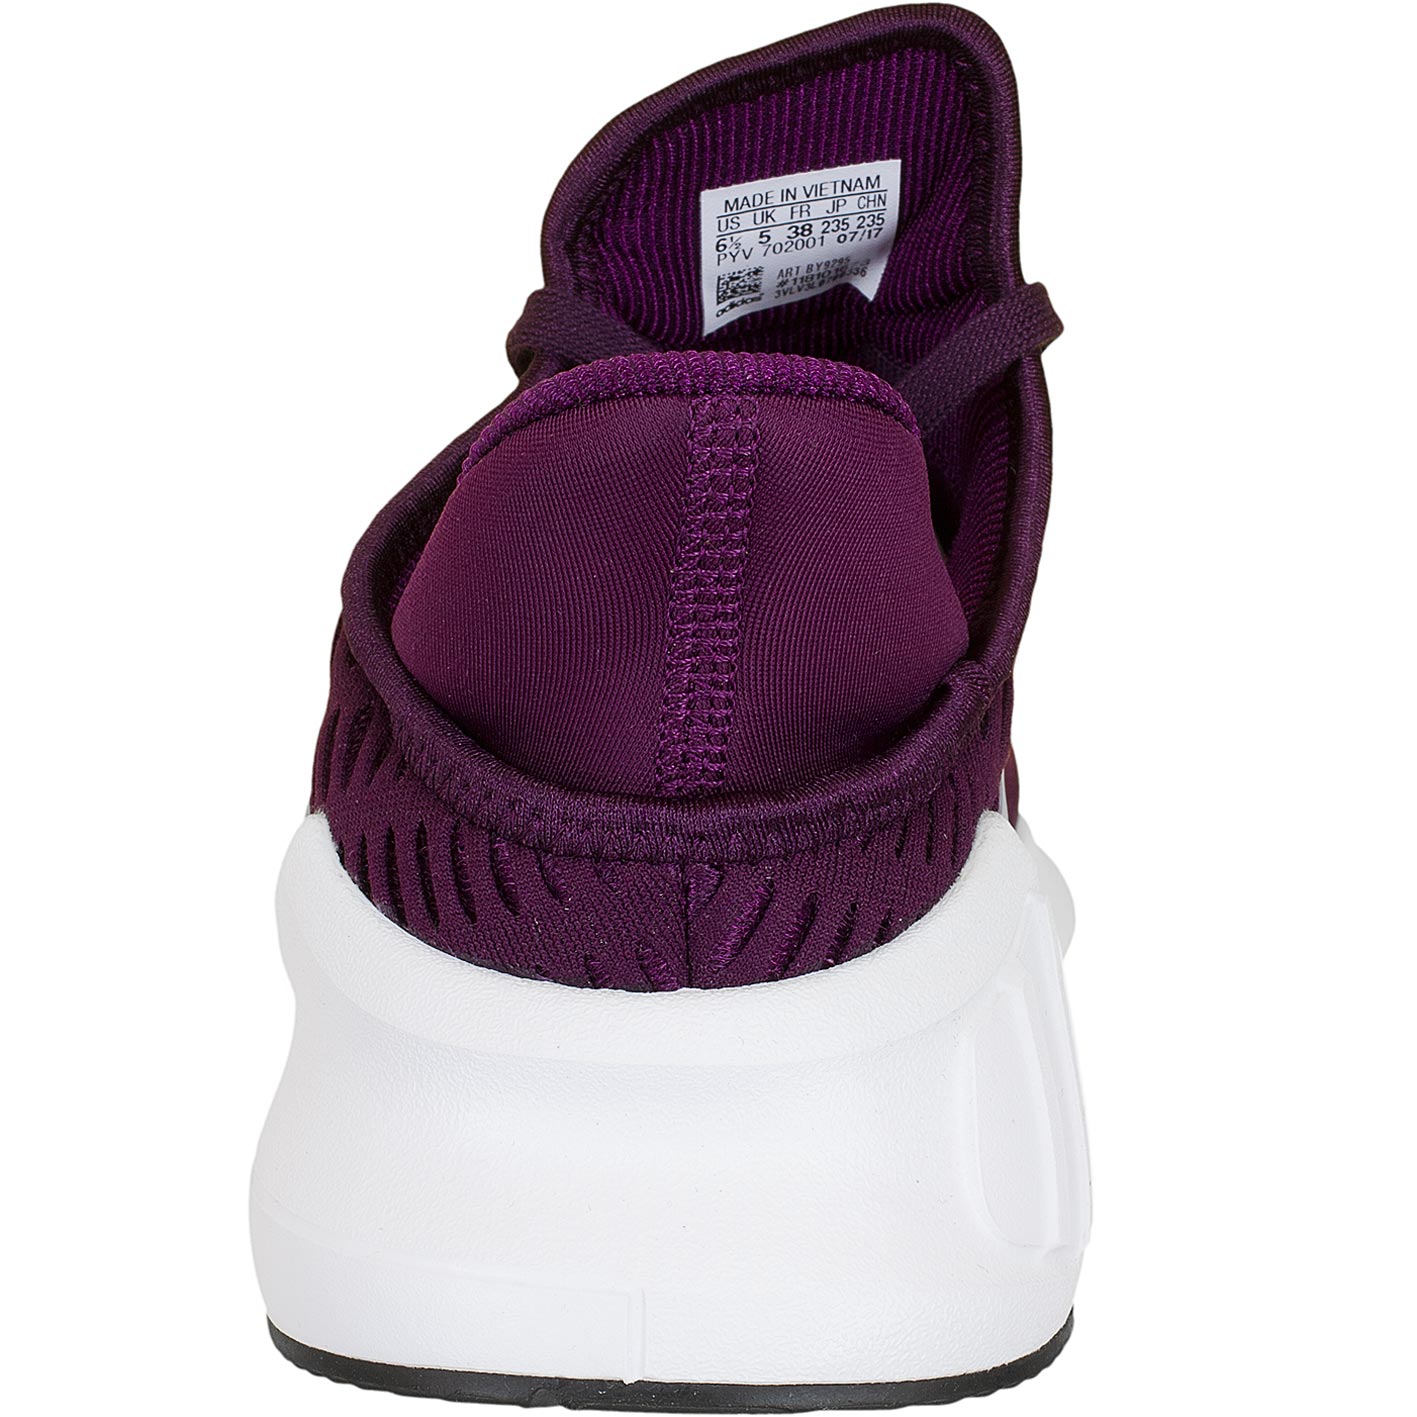 ☆ Adidas Originals Damen Sneaker Climacool 02/17 lila/weiß - hier bestellen!